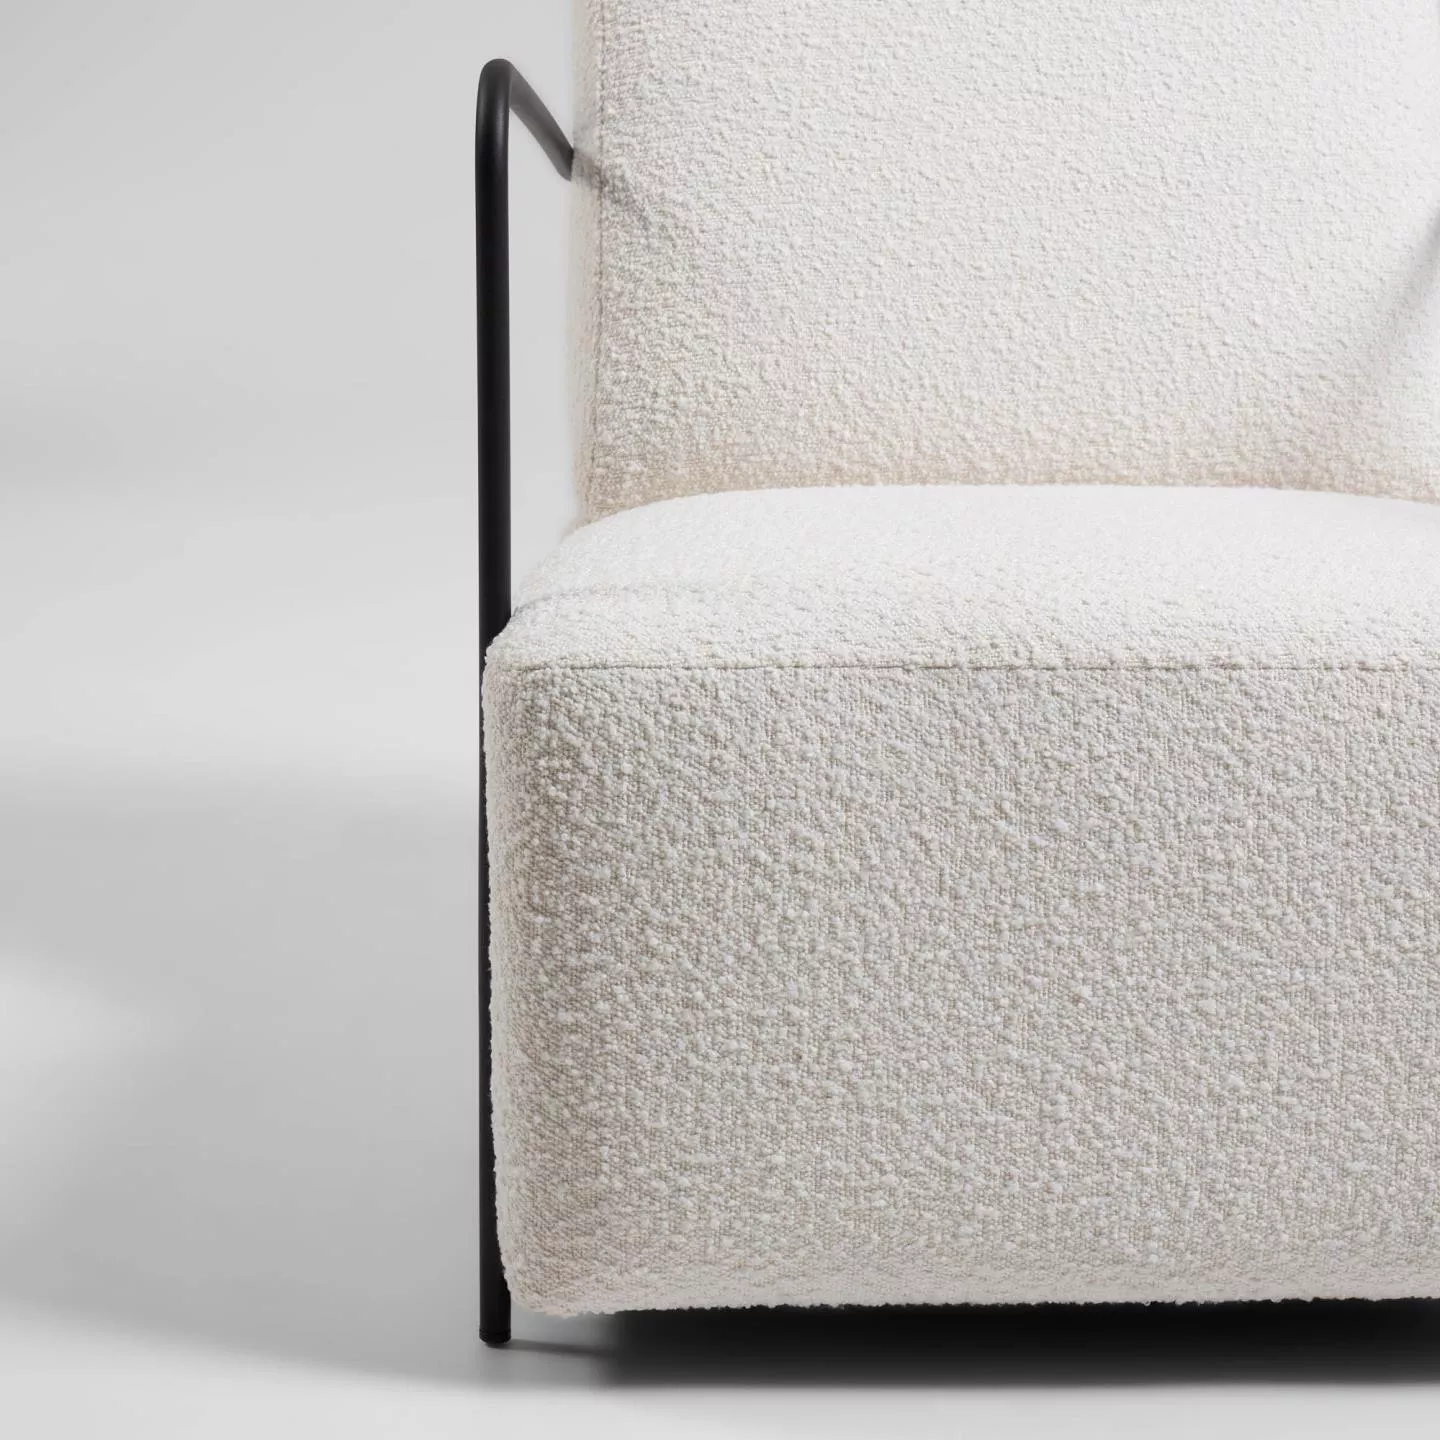 Кресло La Forma Gamer из белой ткани букле